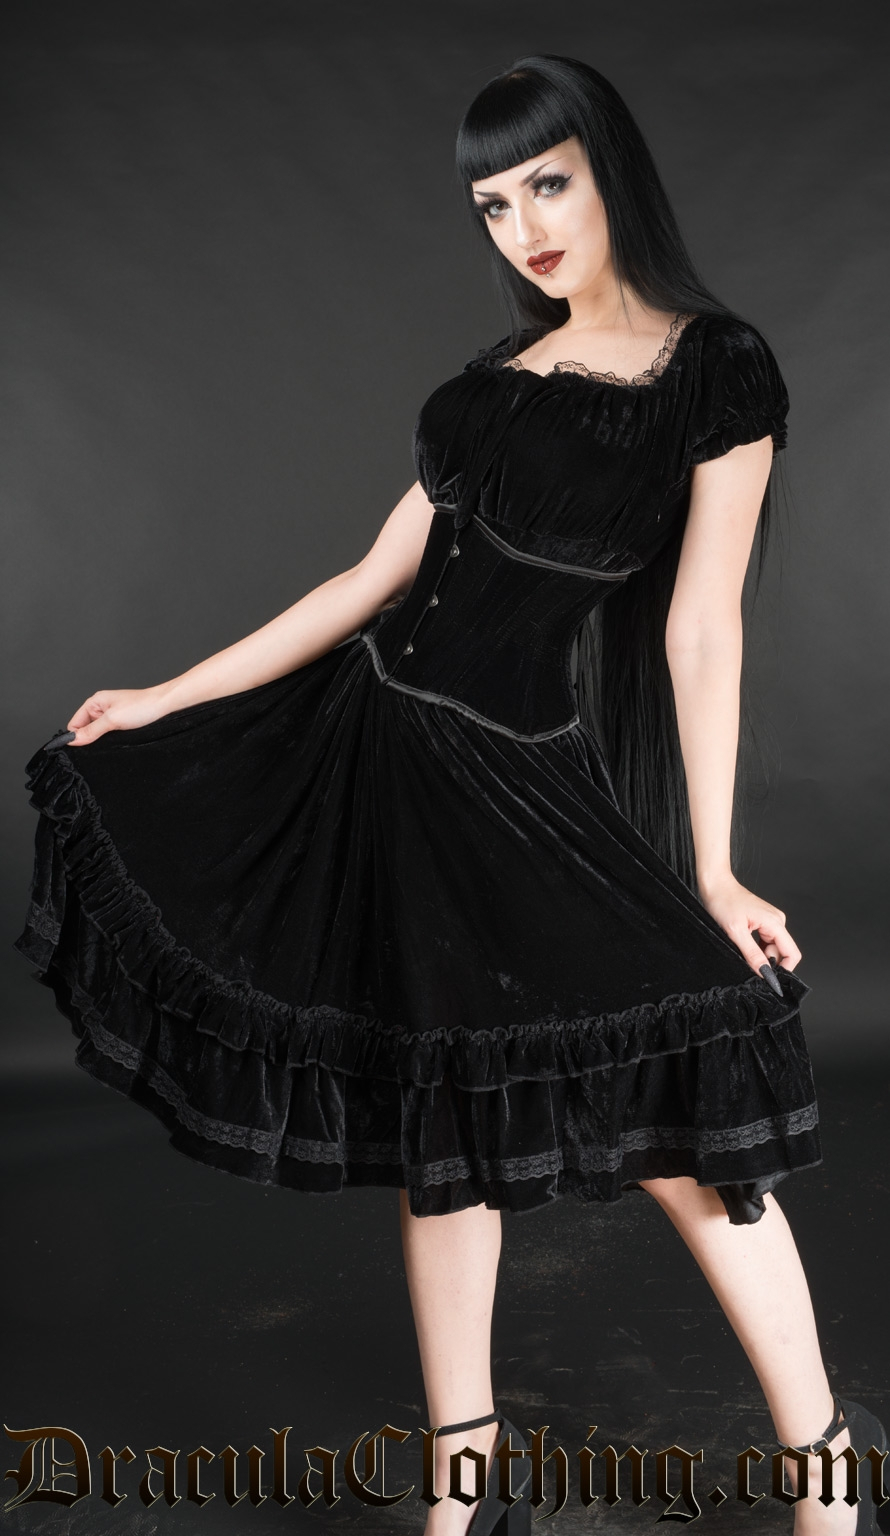 Velvet Gothabilly Dress